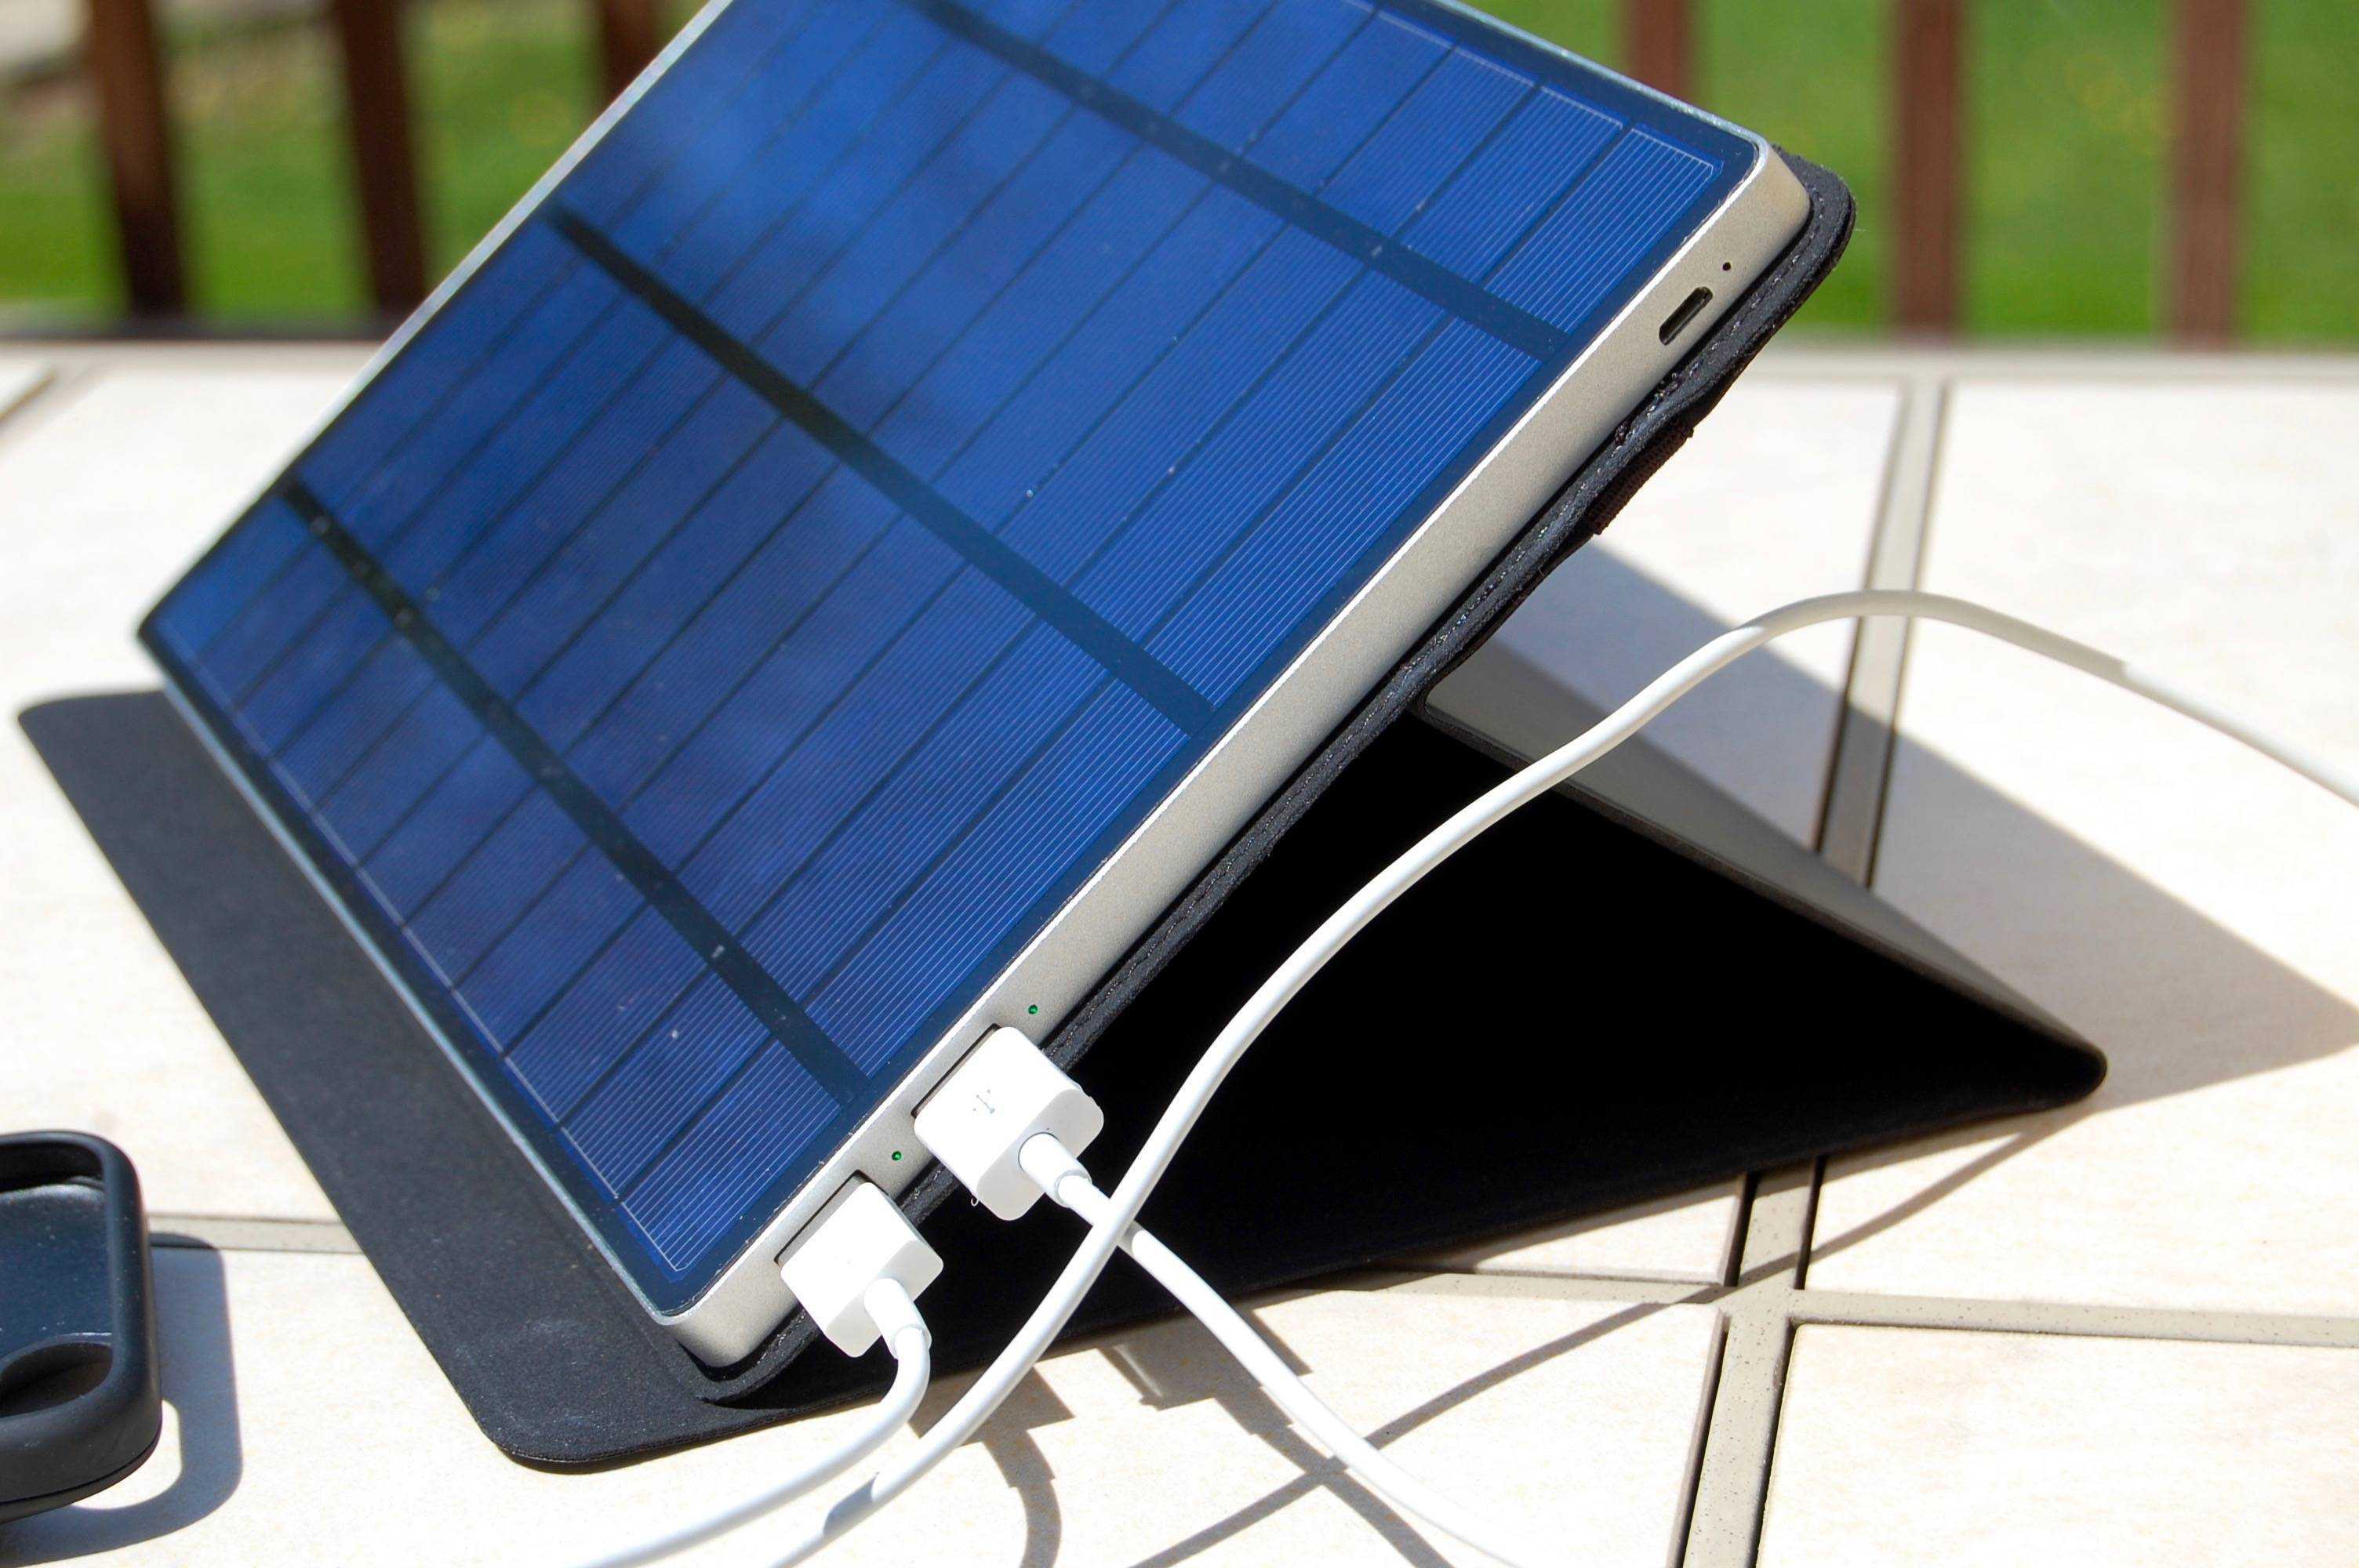 Комплект солнечной батареи с аккумулятором